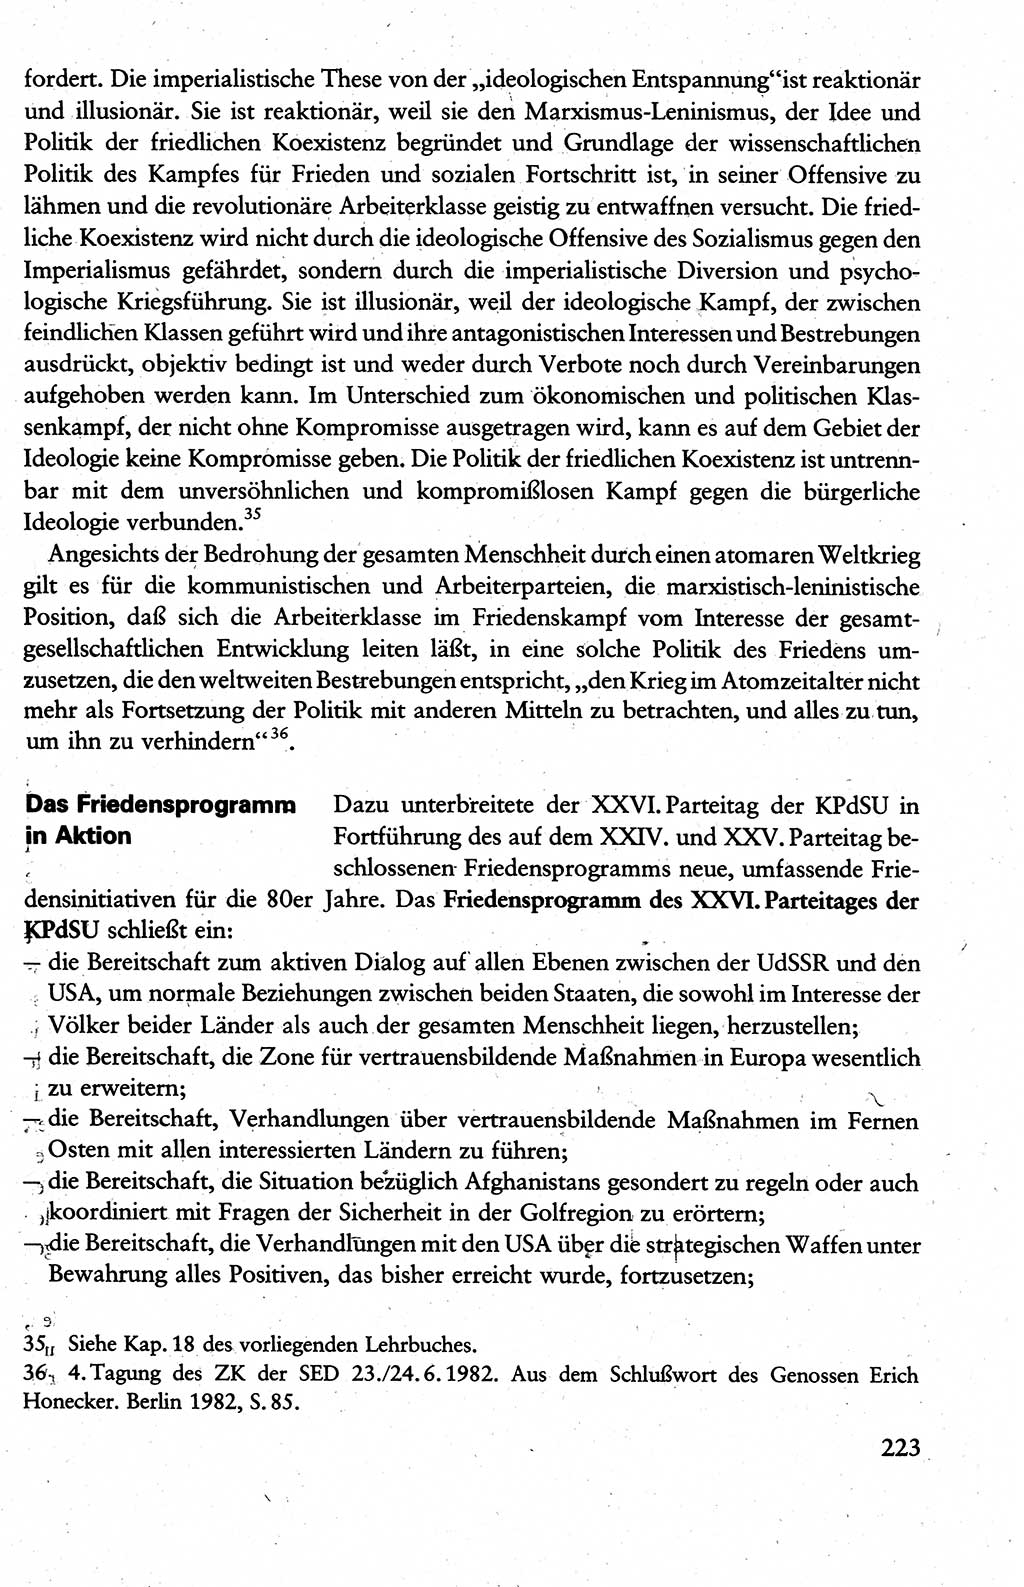 Wissenschaftlicher Kommunismus [Deutsche Demokratische Republik (DDR)], Lehrbuch für das marxistisch-leninistische Grundlagenstudium 1983, Seite 223 (Wiss. Komm. DDR Lb. 1983, S. 223)